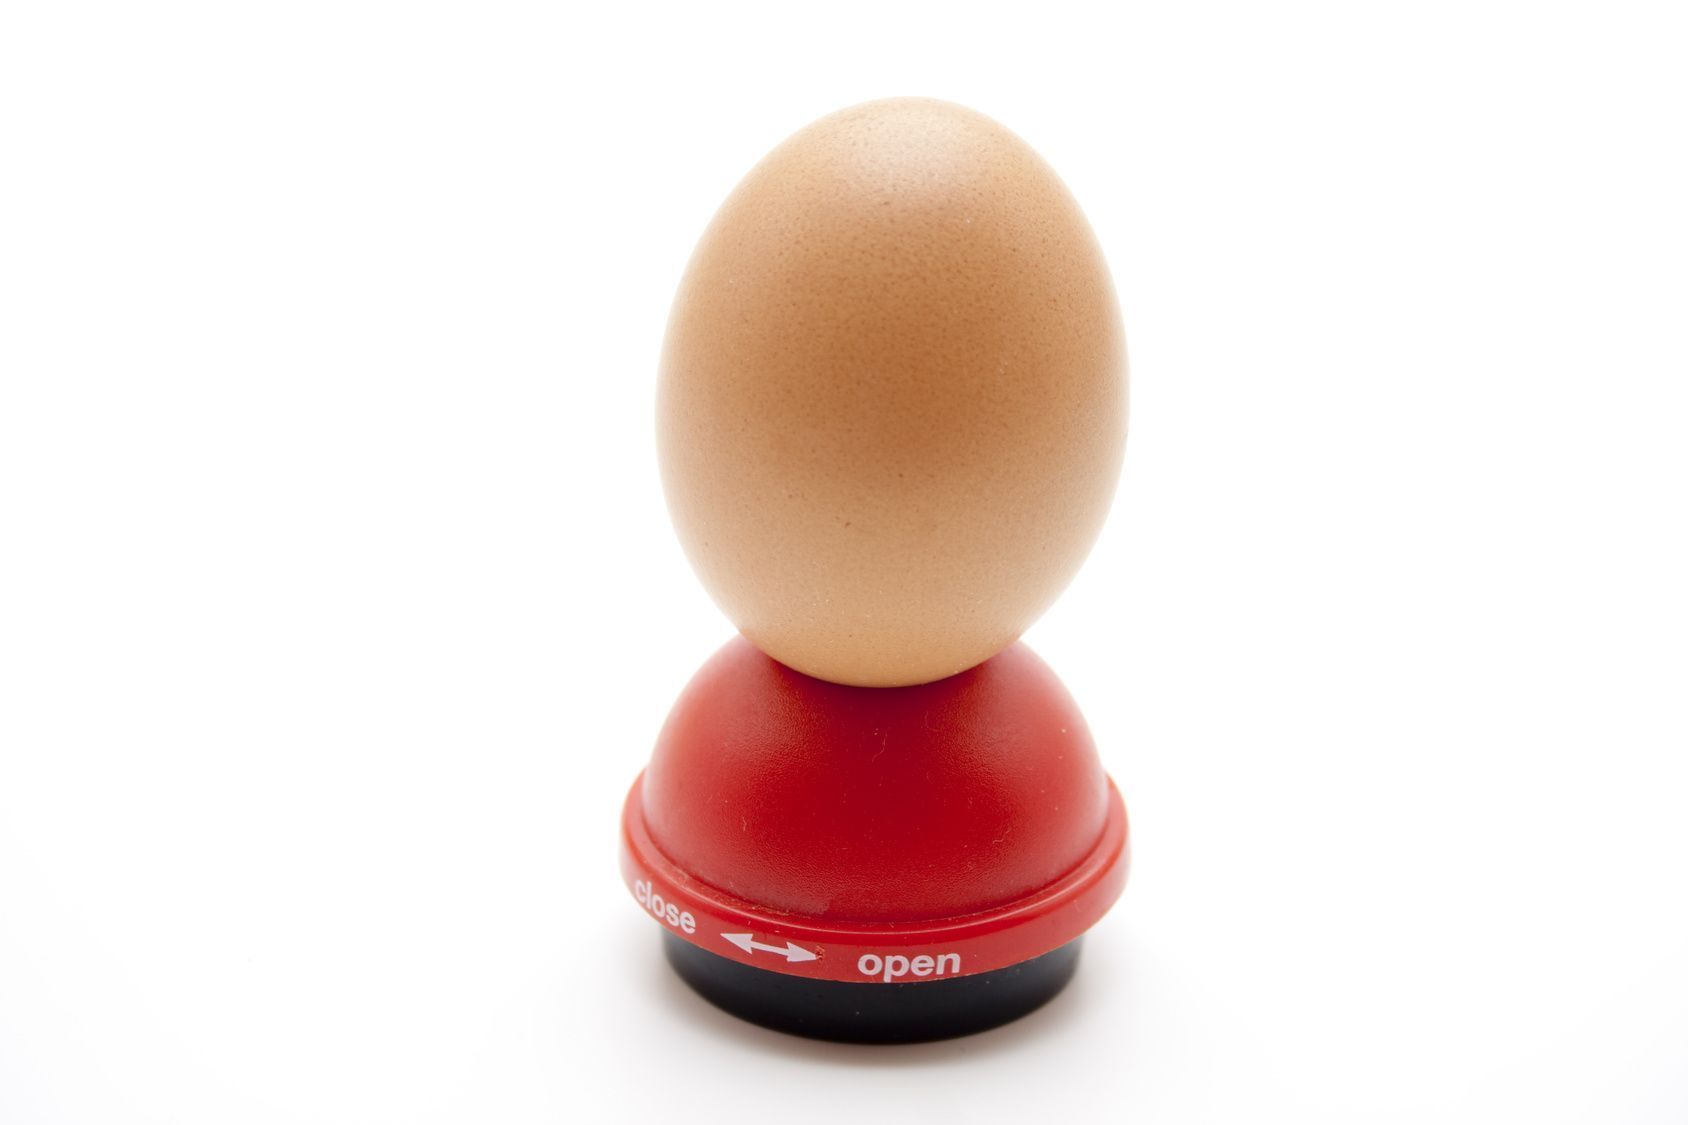 Um Eier zu kochen, ohne dass sie platzen, stechen Sie diese an der Unterseite mit einem Eidorn an. Alternativ können Sie auch eine saubere Nadel verwenden.